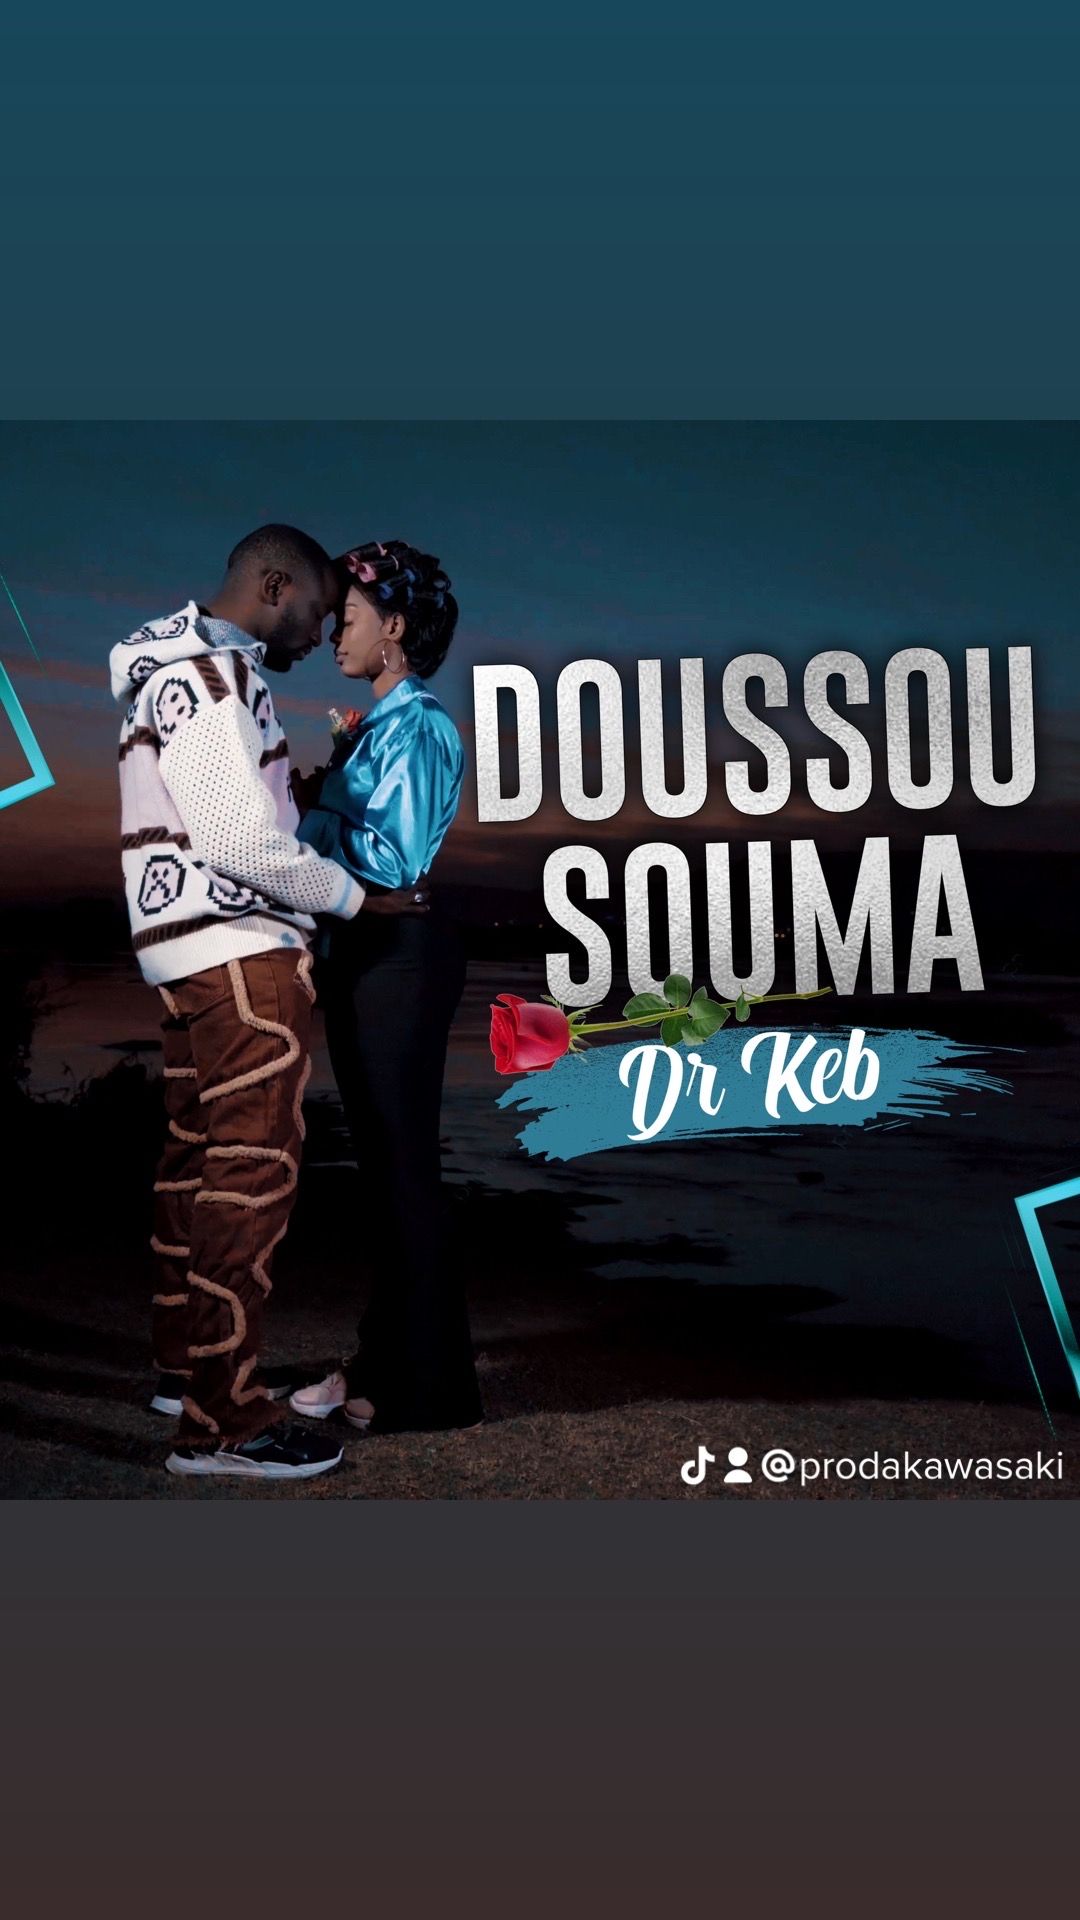 Dr keb - Doussou Souma